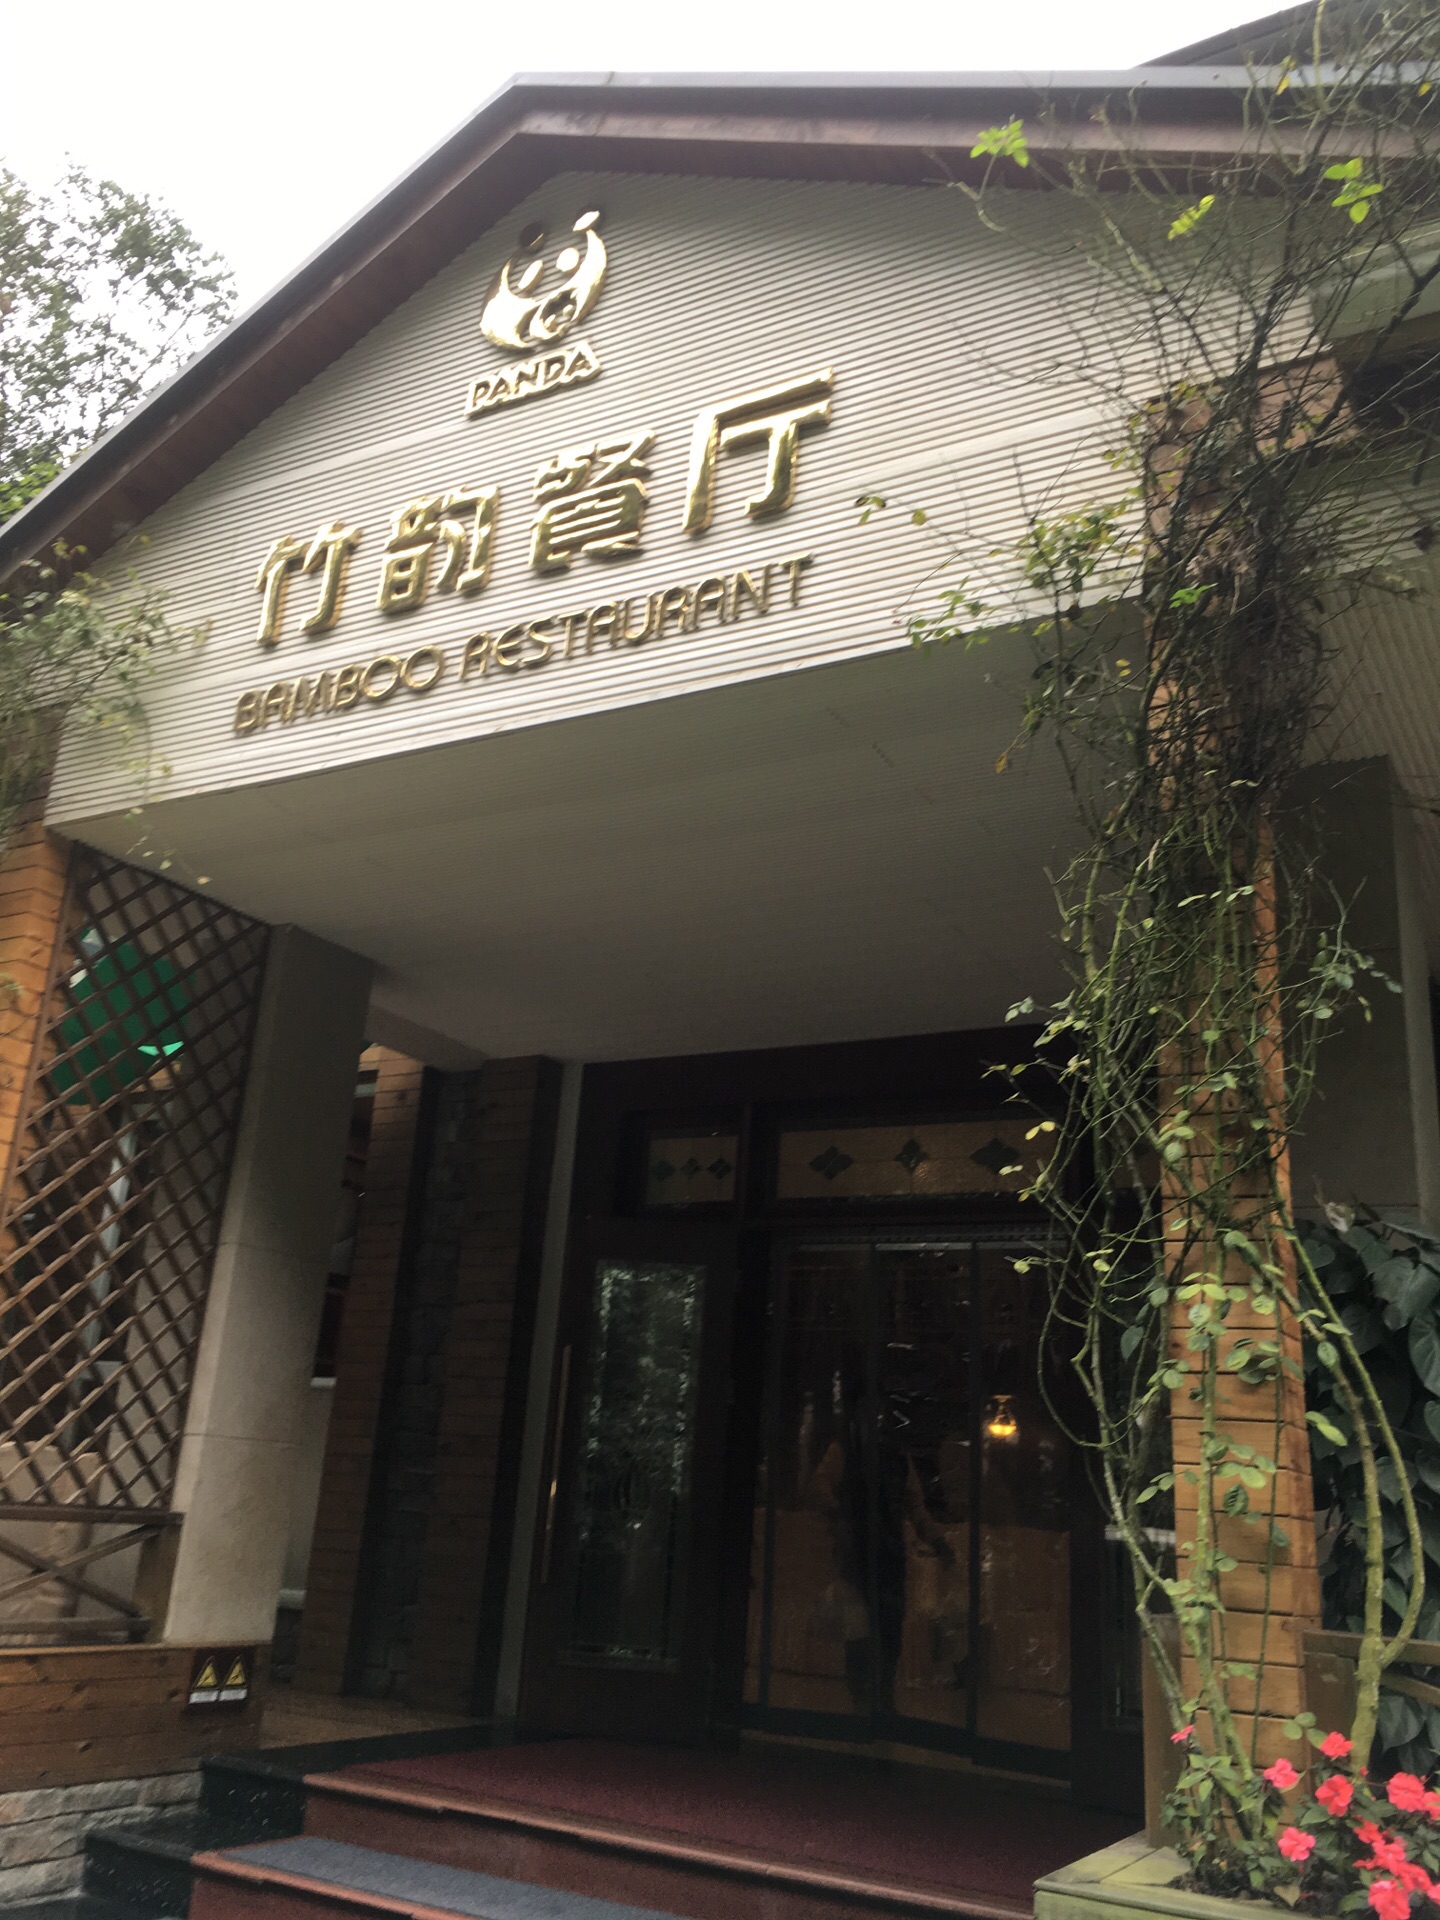 2023熊猫餐厅美食餐厅,熊猫餐厅位于长隆野生动物园...【去哪儿攻略】